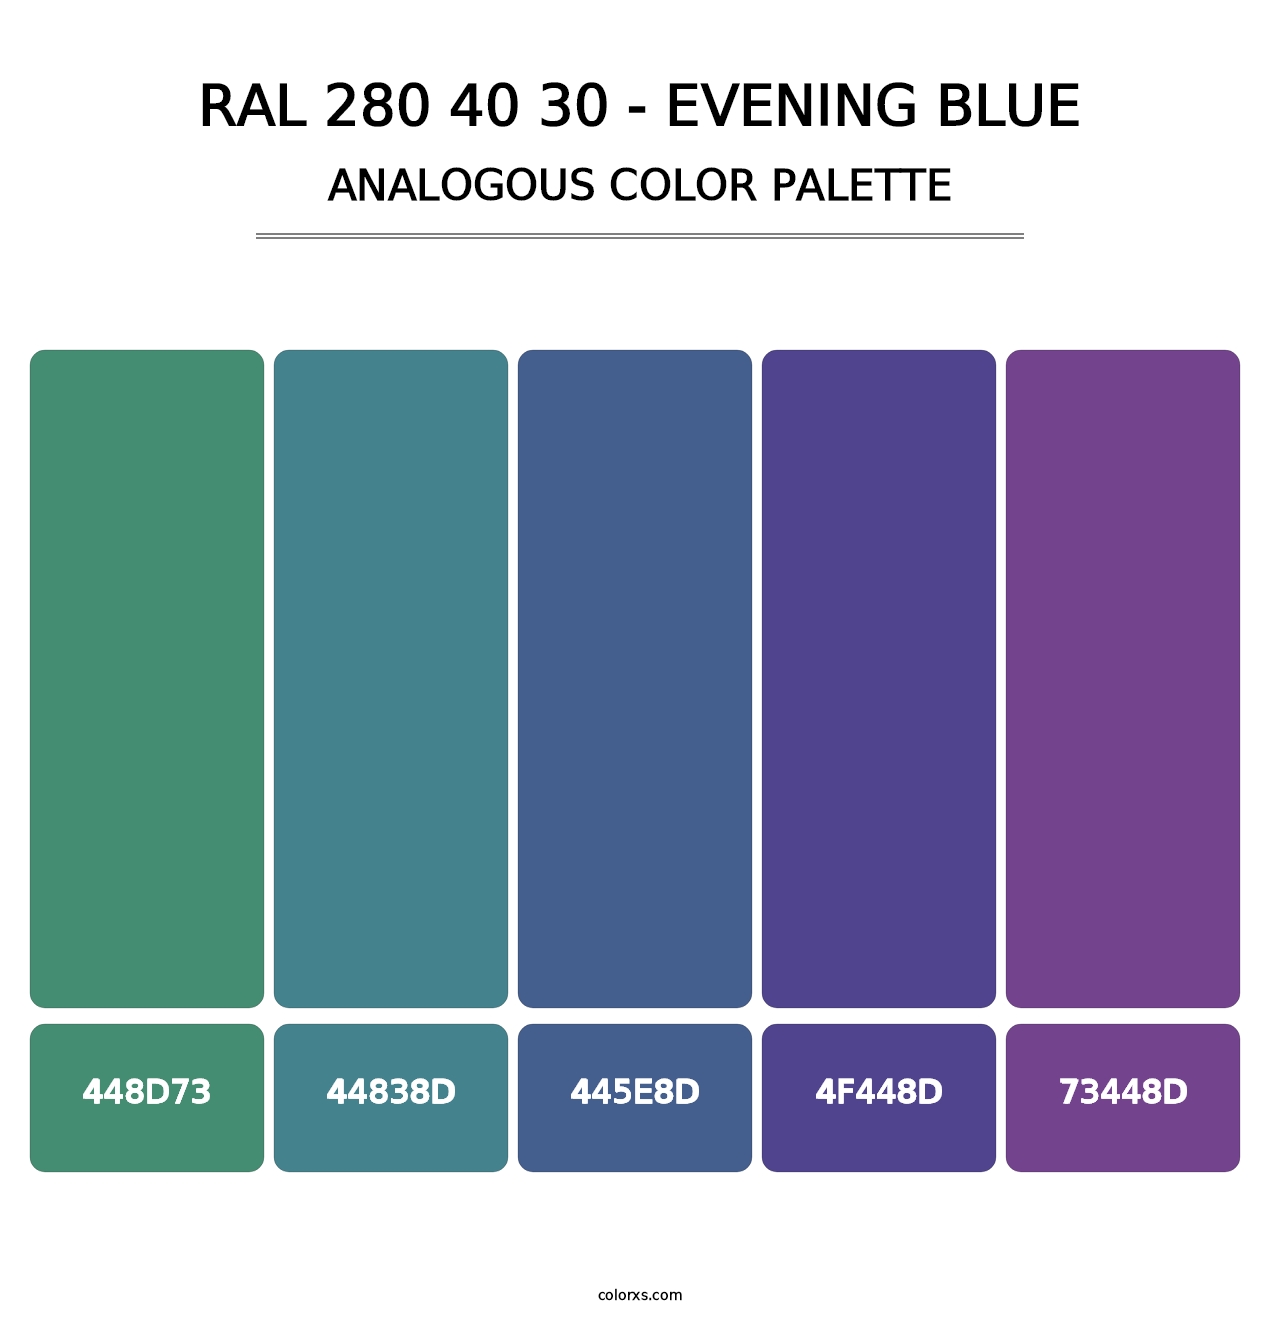 RAL 280 40 30 - Evening Blue - Analogous Color Palette